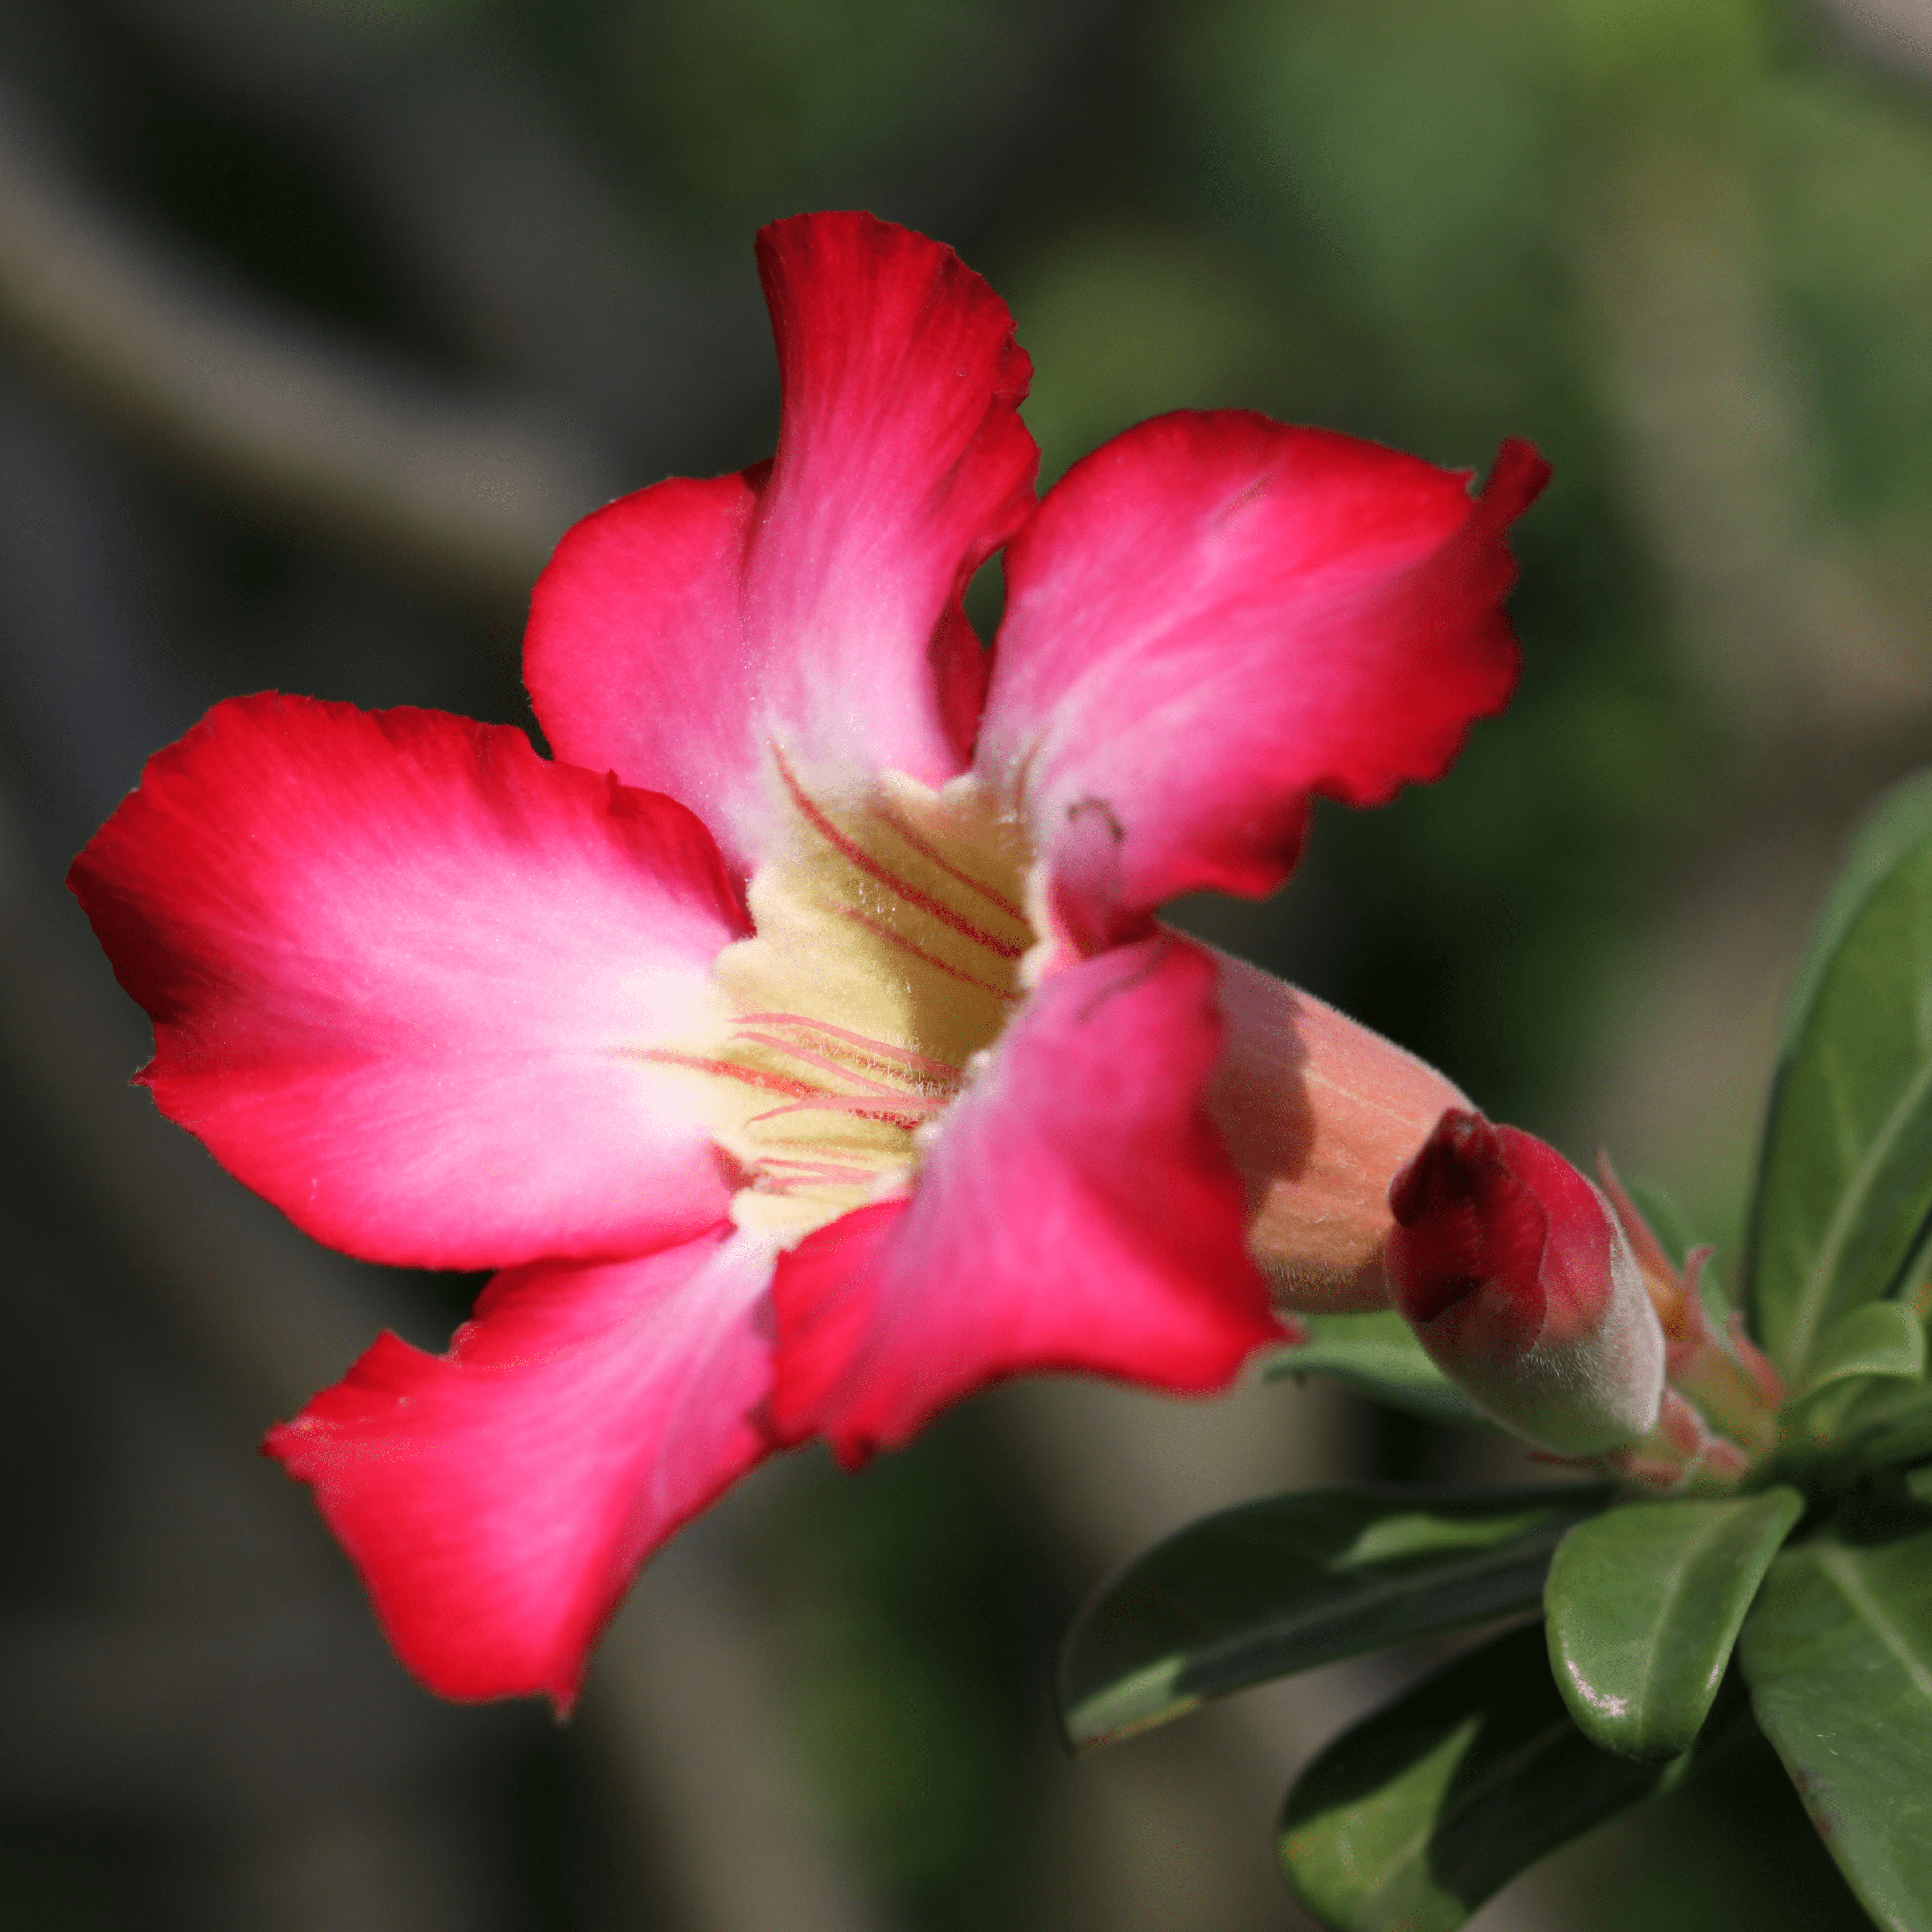 Desert Rose (Adenium obesum) Flowering Live Plant